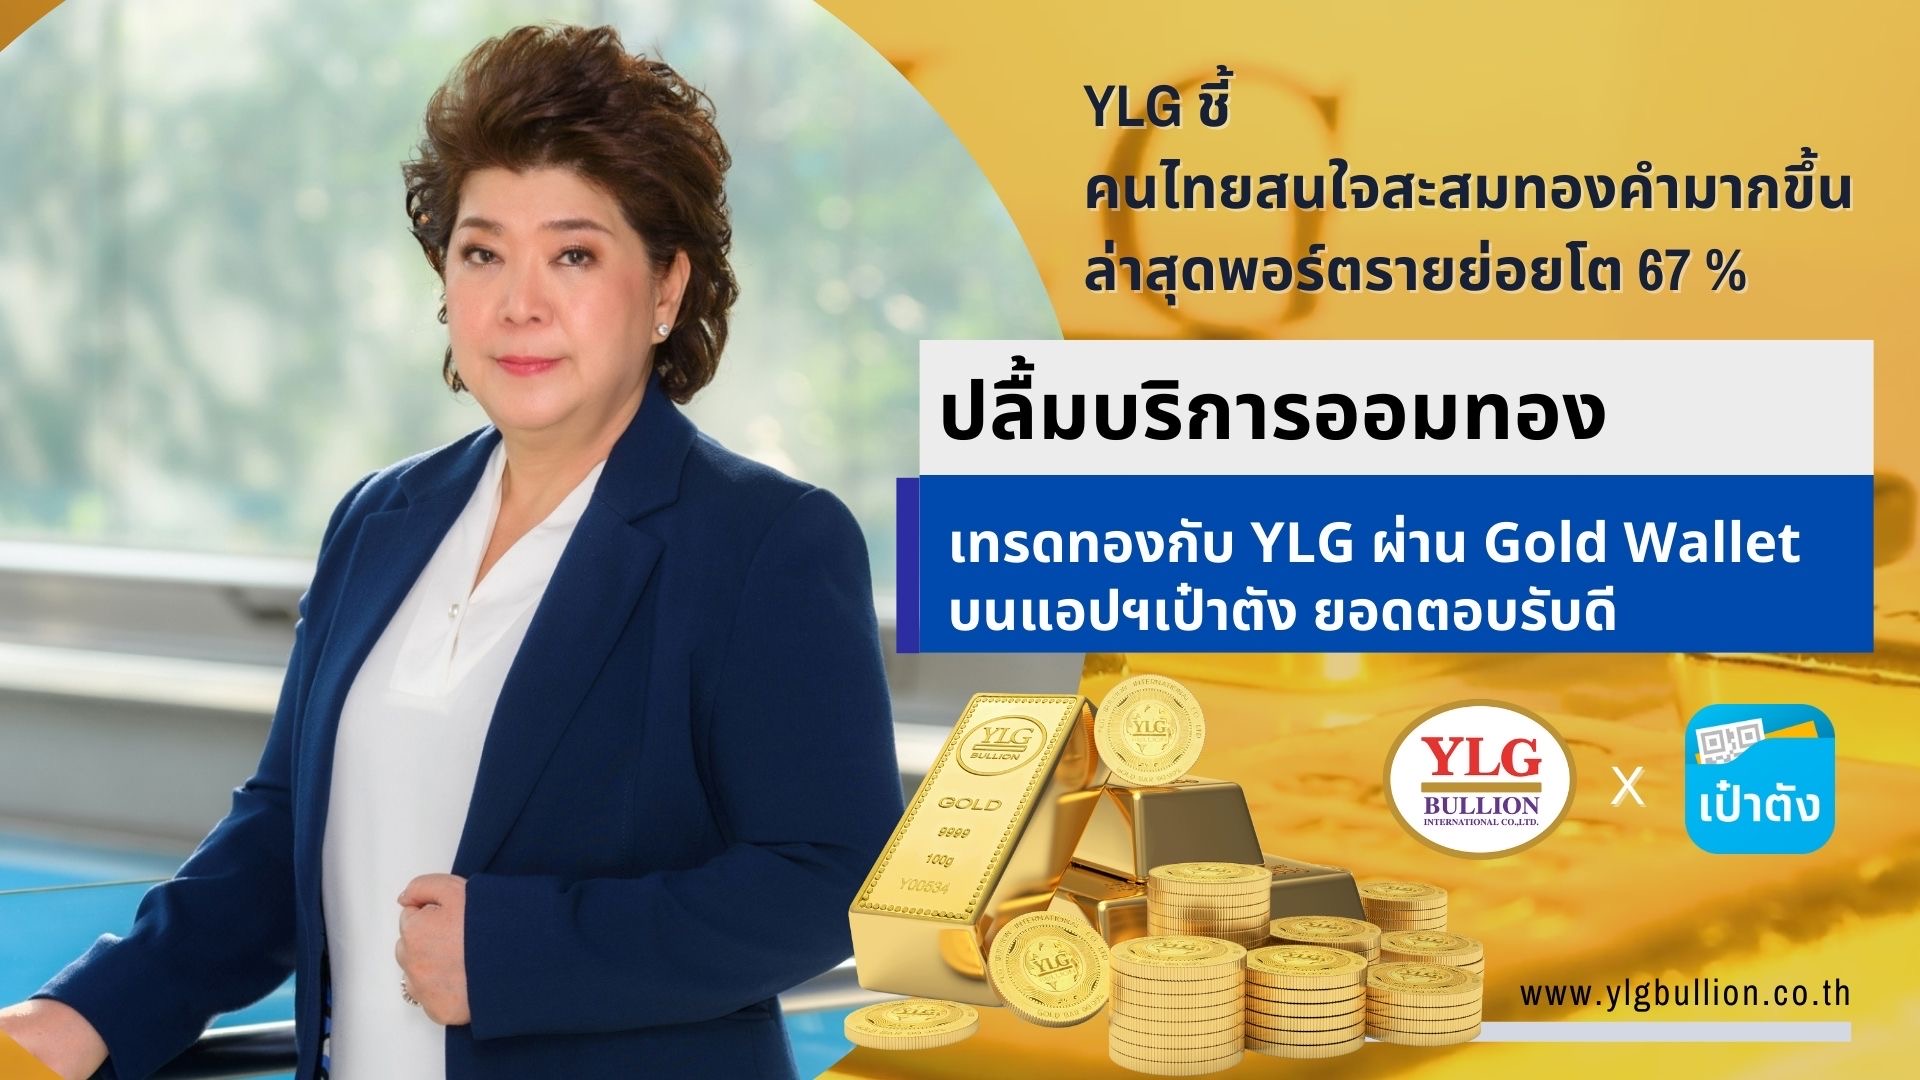 YLG ชี้คนไทยสนใจสะสมทองคำมากขึ้น ปลื้มบริการออมทอง – เทรดทองกับ YLG ผ่าน Gold Wallet บนแอปฯเป๋าตัง ยอดตอบรับดี